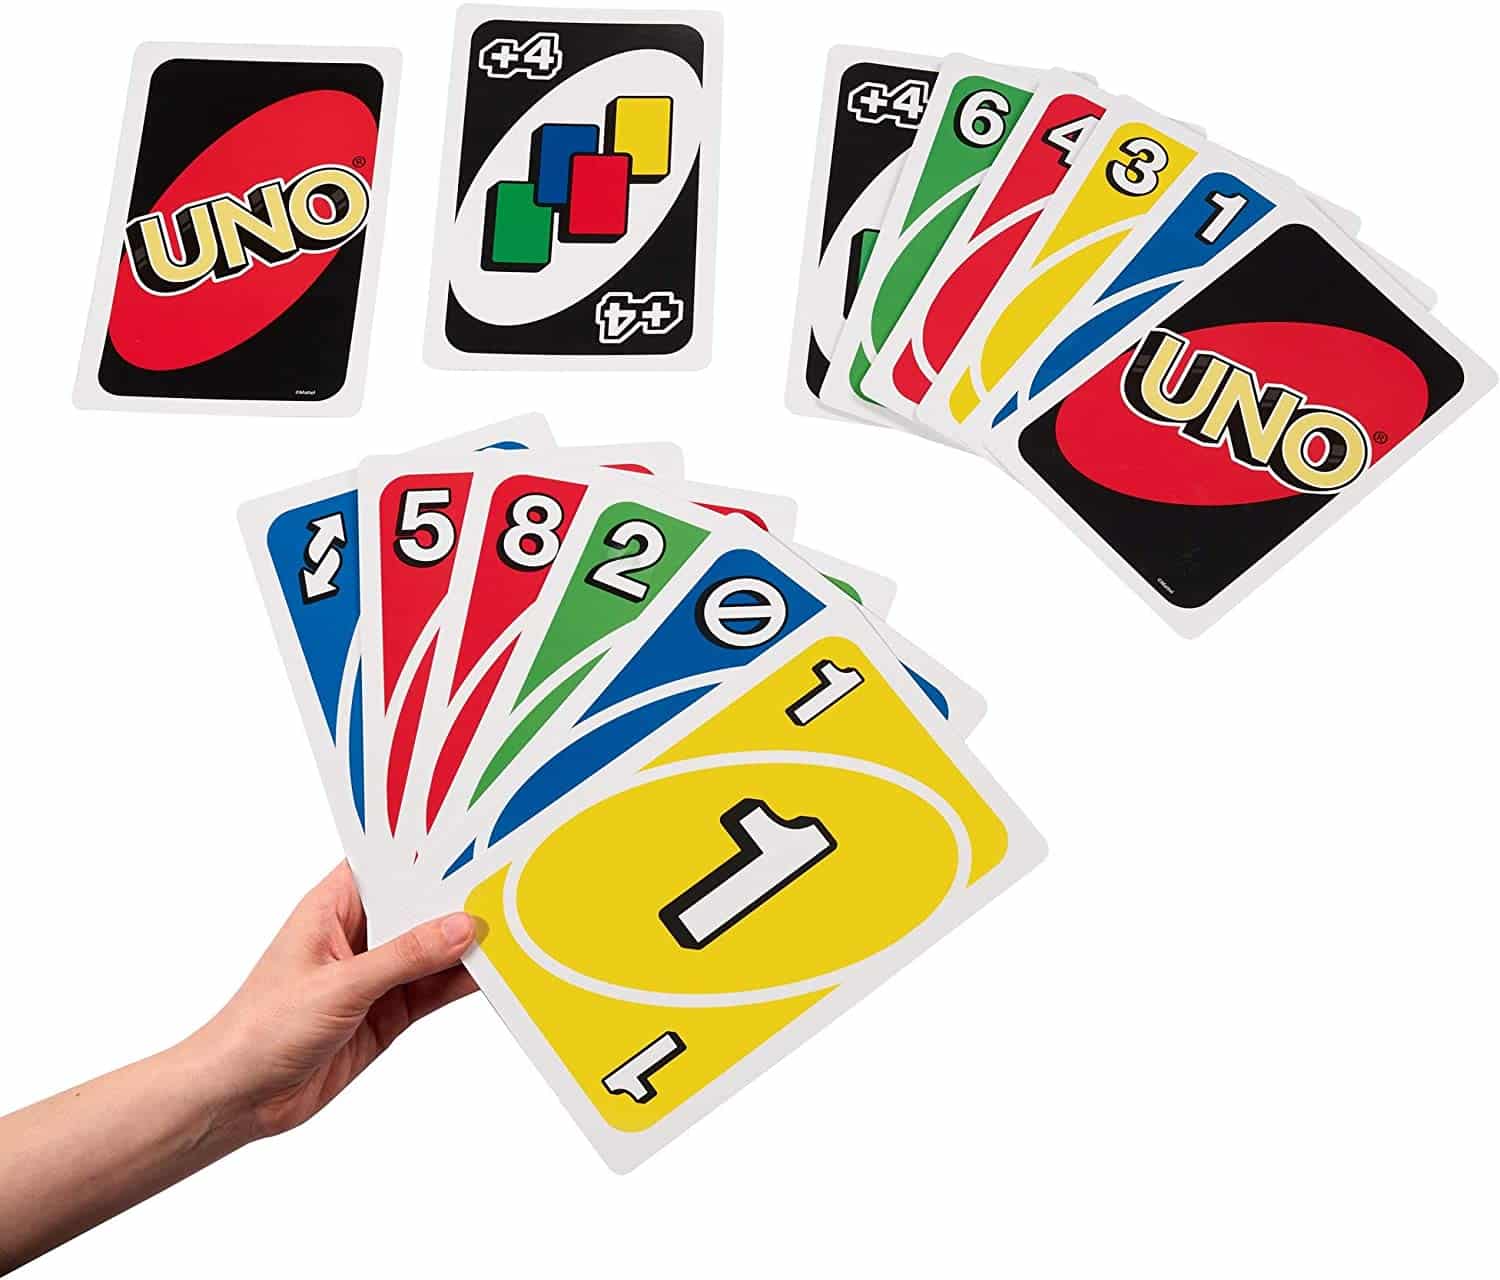 Giant Uno jeux de cartes Noel 2020